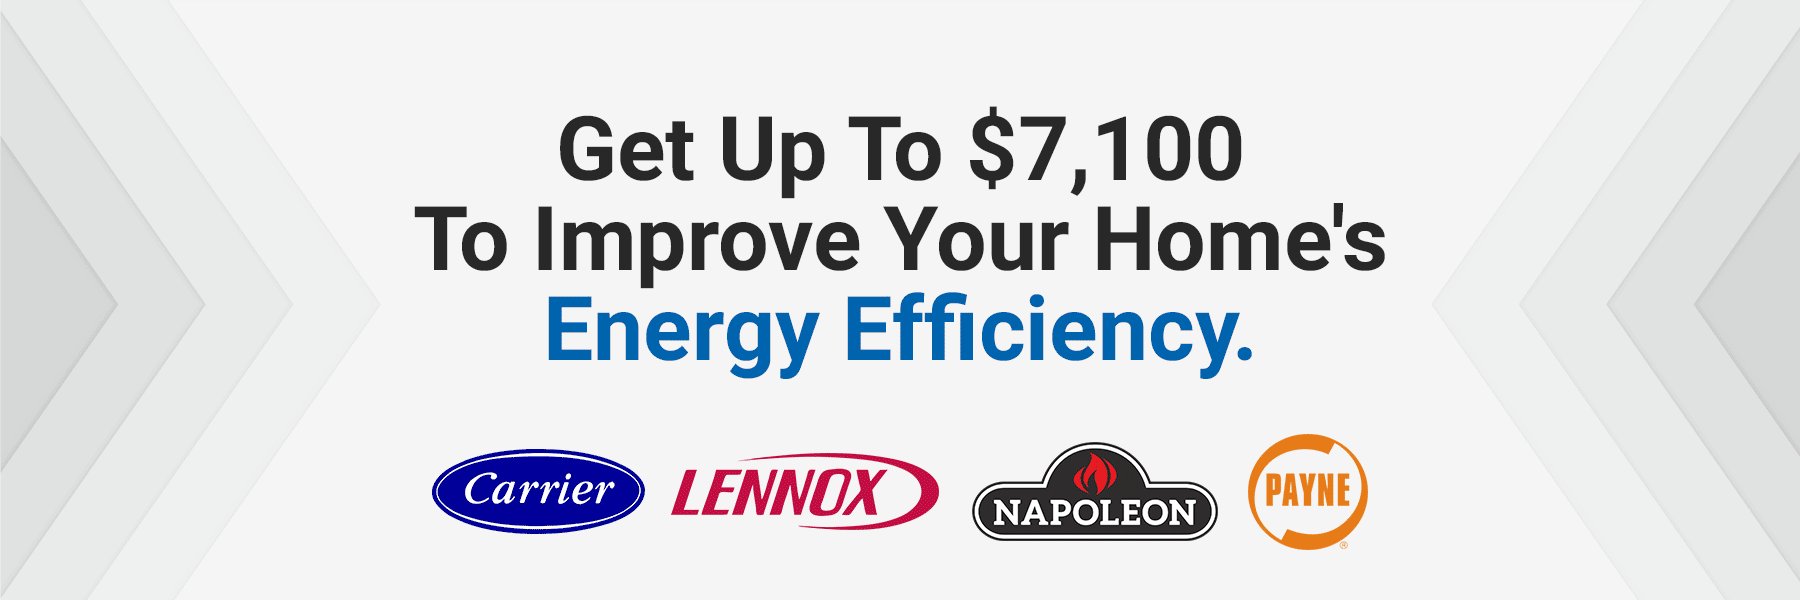 Ontario Lennox EL16XC1 High-efficiency Air Conditioner incentives